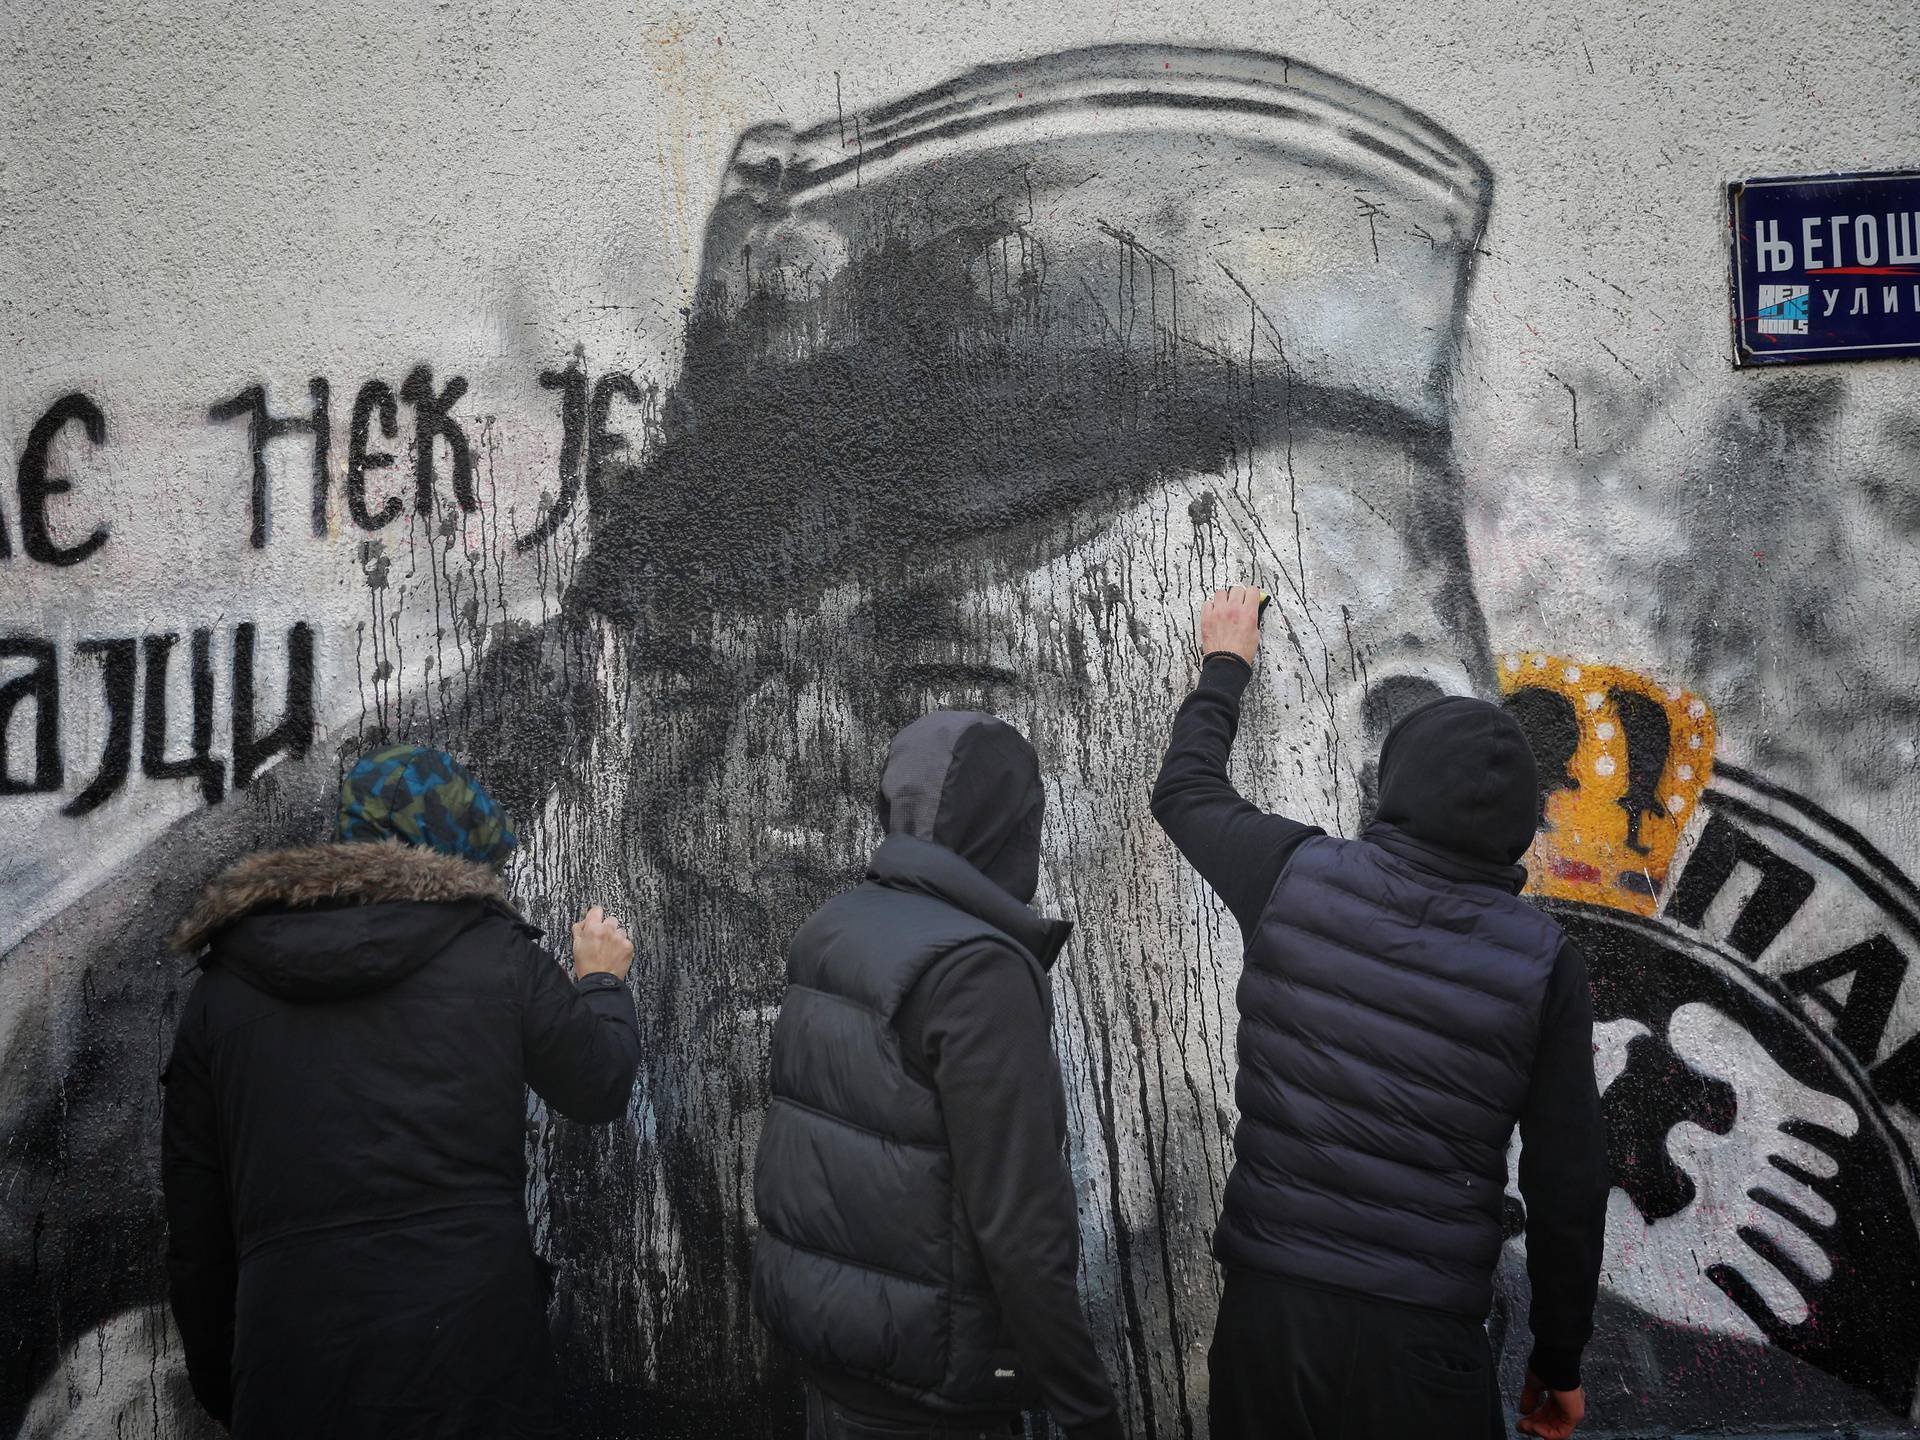 Beograd: Grupa mladića čisti crnu boju koju je netko bacio na Mladićev mural